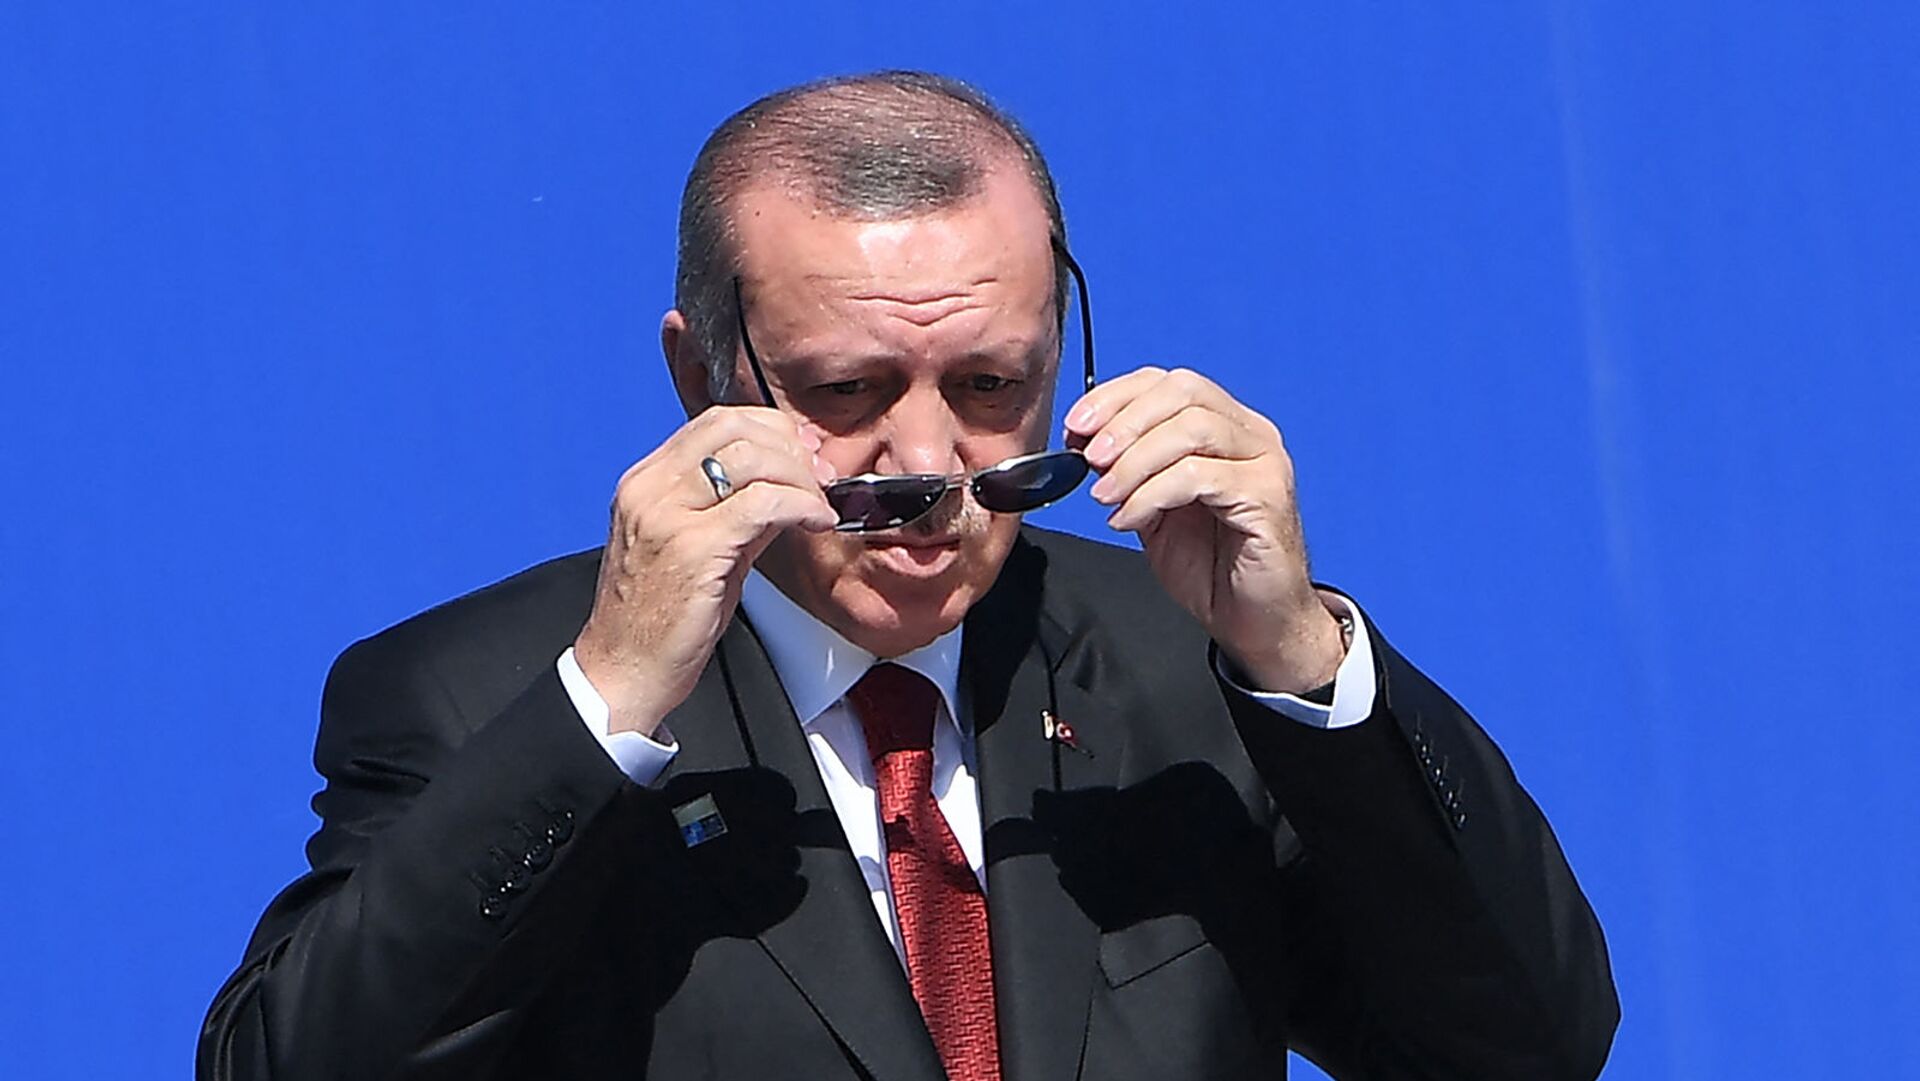 Президент Турции Реджеп Тайип Эрдоган надевает солнечные очки по прибытии на саммит НАТО (25 мая 2017). Брюссель - Sputnik Армения, 1920, 26.10.2021